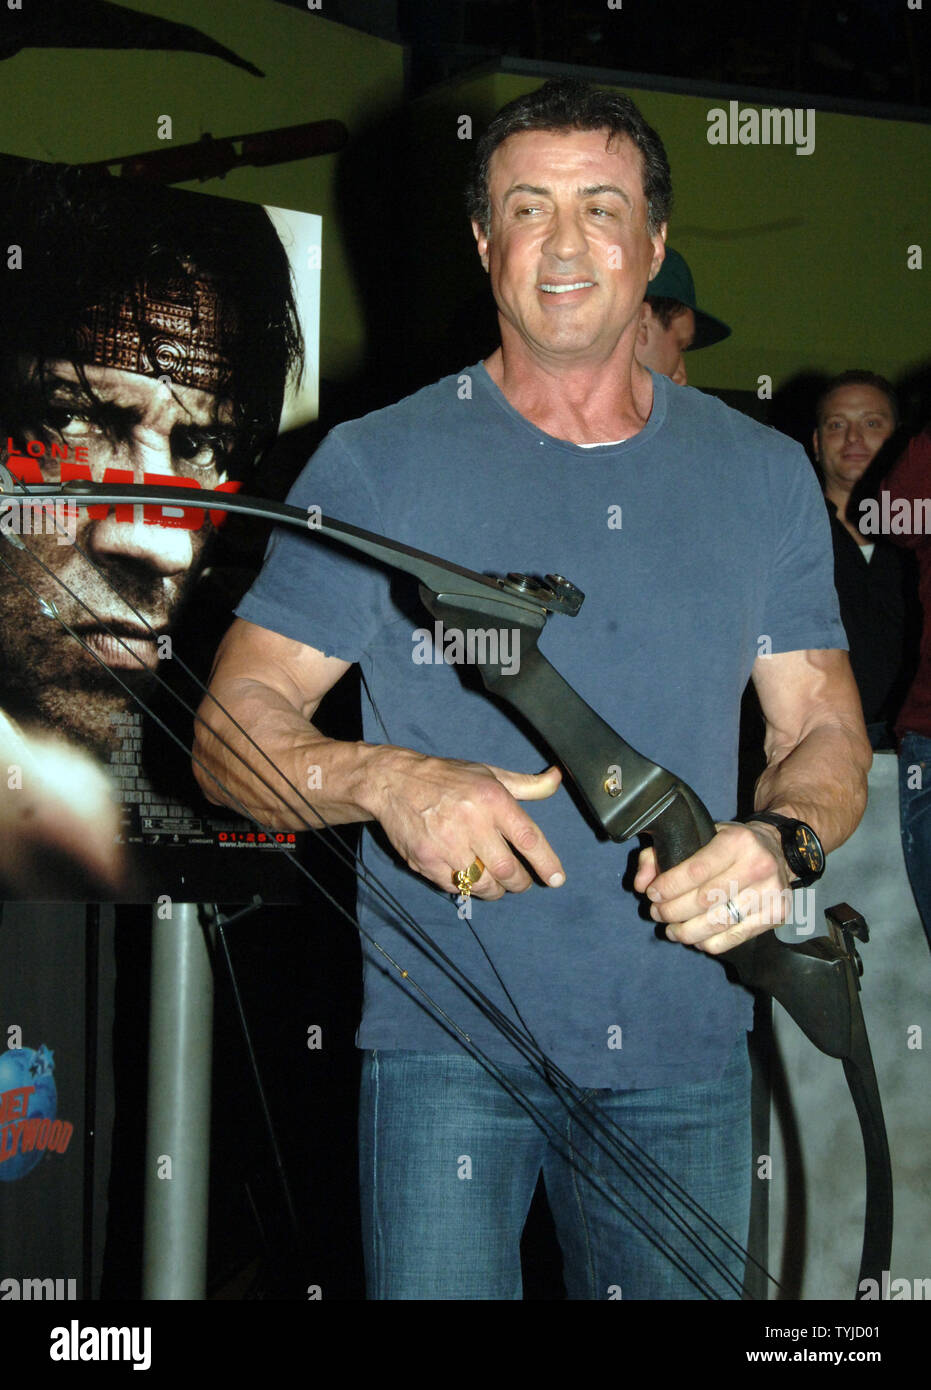 Schauspieler Sylvester Stallone erscheint im Planet Hollywood in New York Pfeil und Bogen, die er in seinem neuesten Film "Rambo" am 17. Januar 2008 verwendet. (UPI Foto/Ezio Petersen) Stockfoto